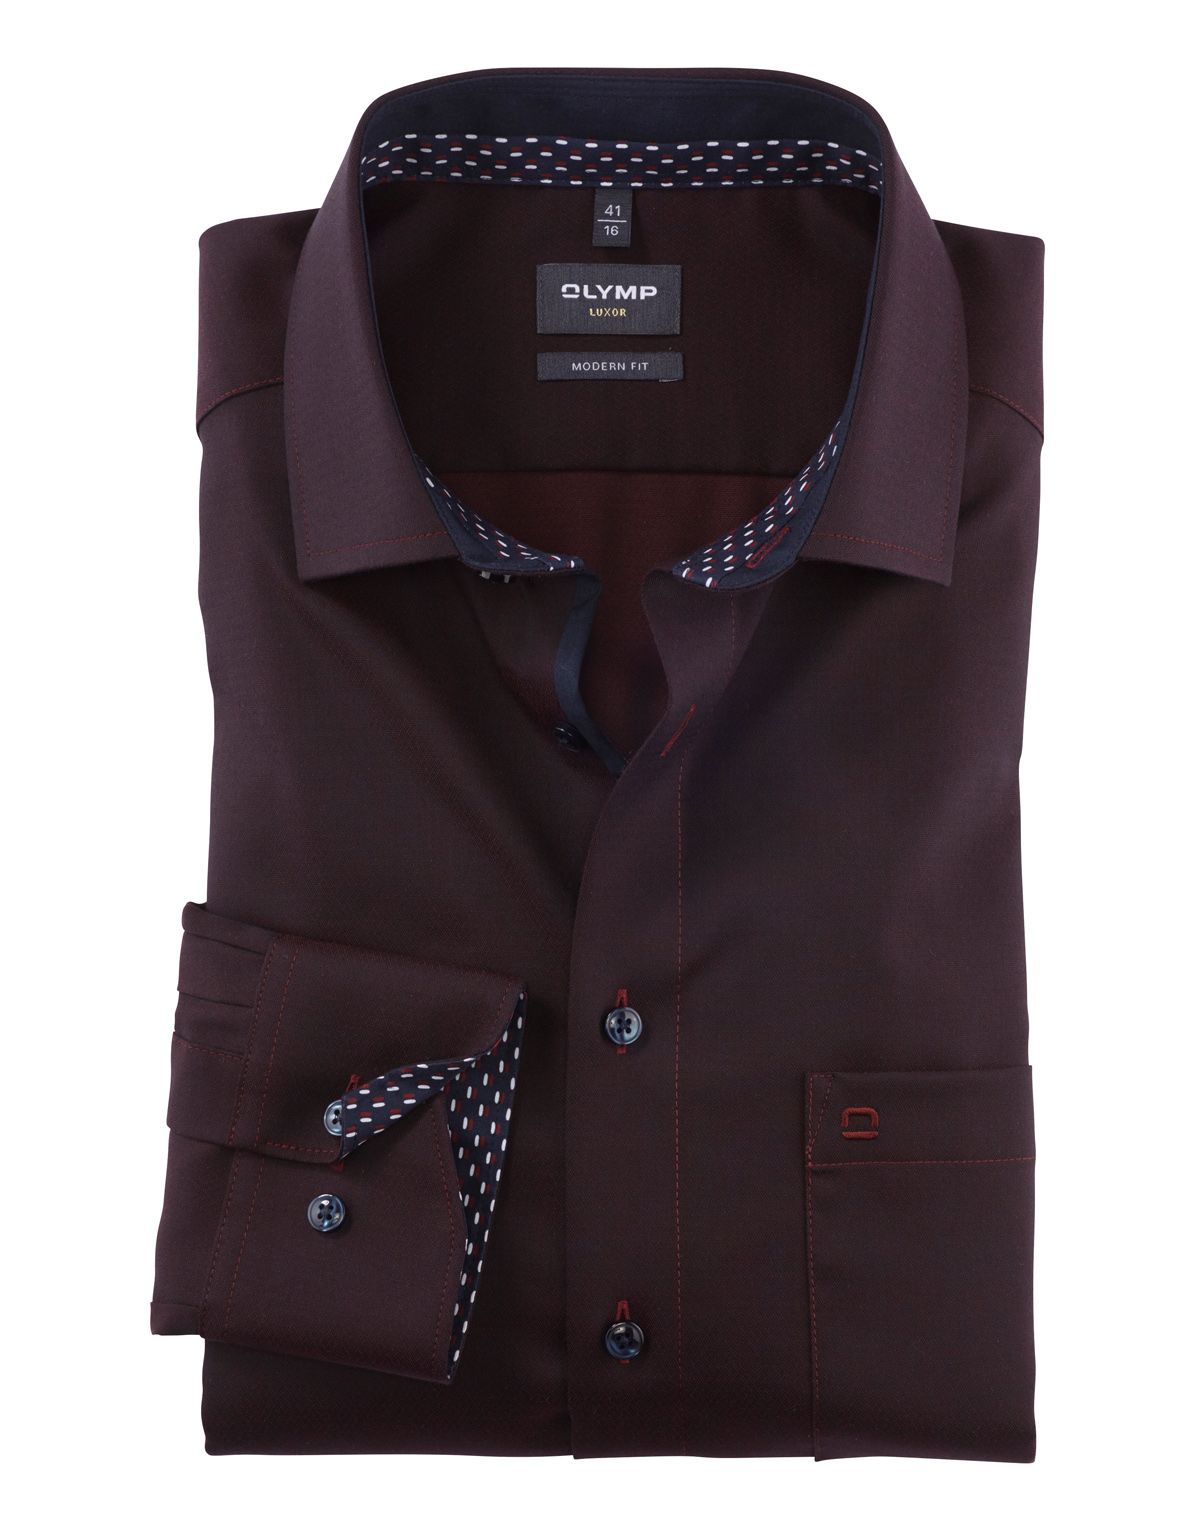 Рубашка мужская OLYMP Luxor, modern fit, фактурная ткань, рост выше 186